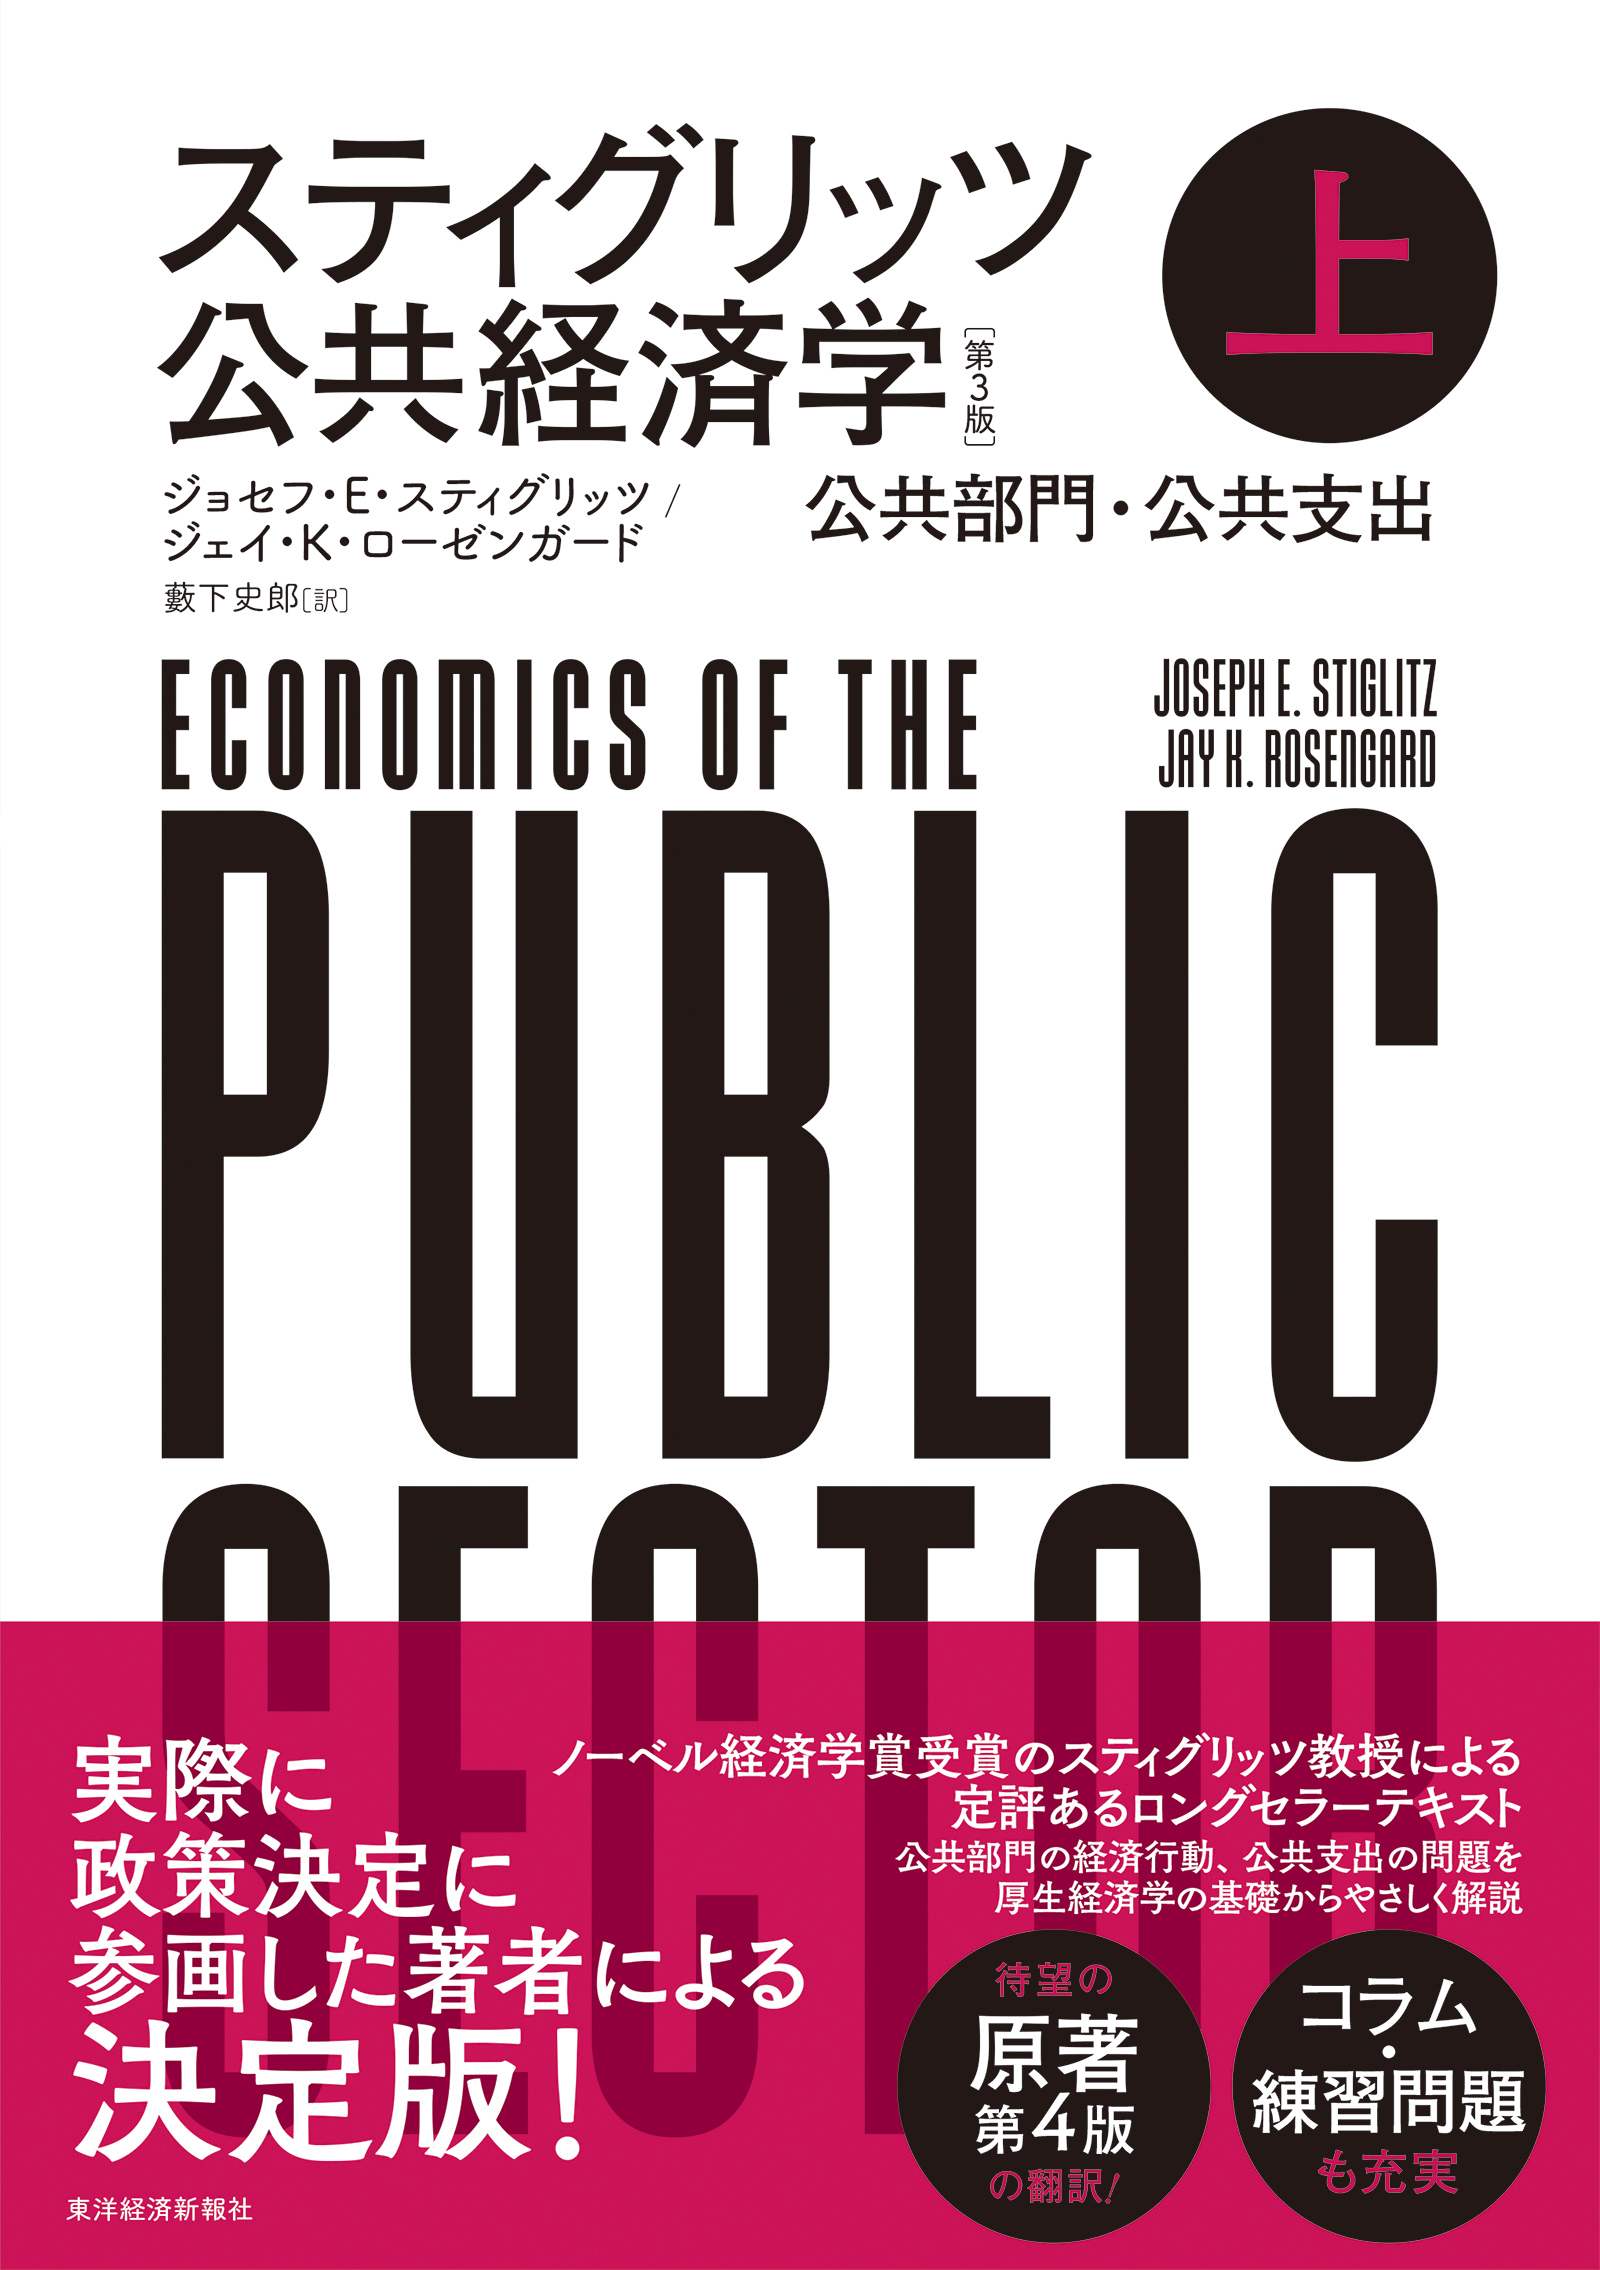 スティグリッツ 公共経済学(第3版)下 東洋経済STORE